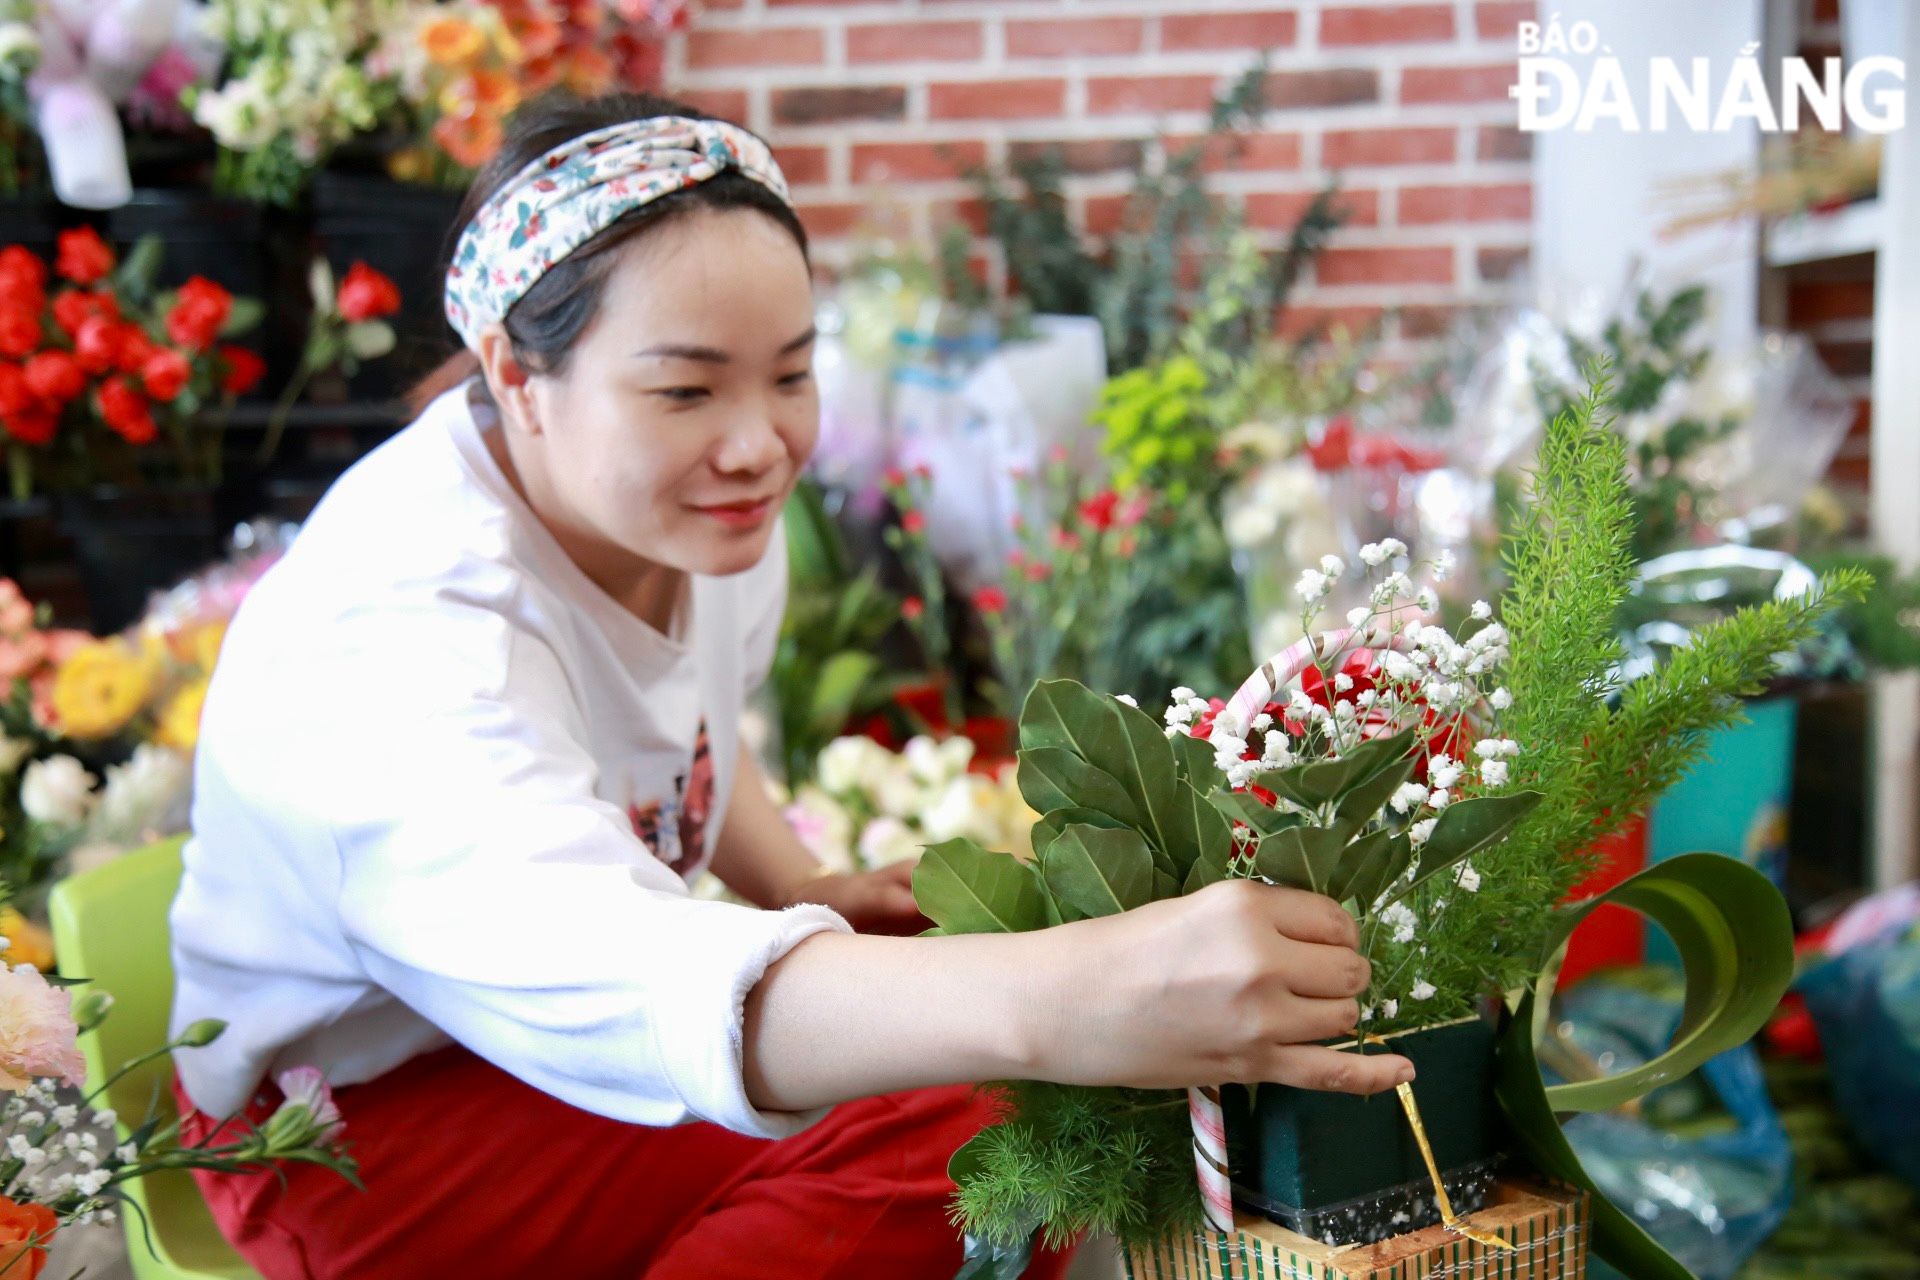 Các cửa hàng hoa tươi đang phải huy động nhân lực tại chỗ để cắm, bó hoa phục vụ nhu cầu tăng cao của khách hàng trong dịp lễ 8-3.